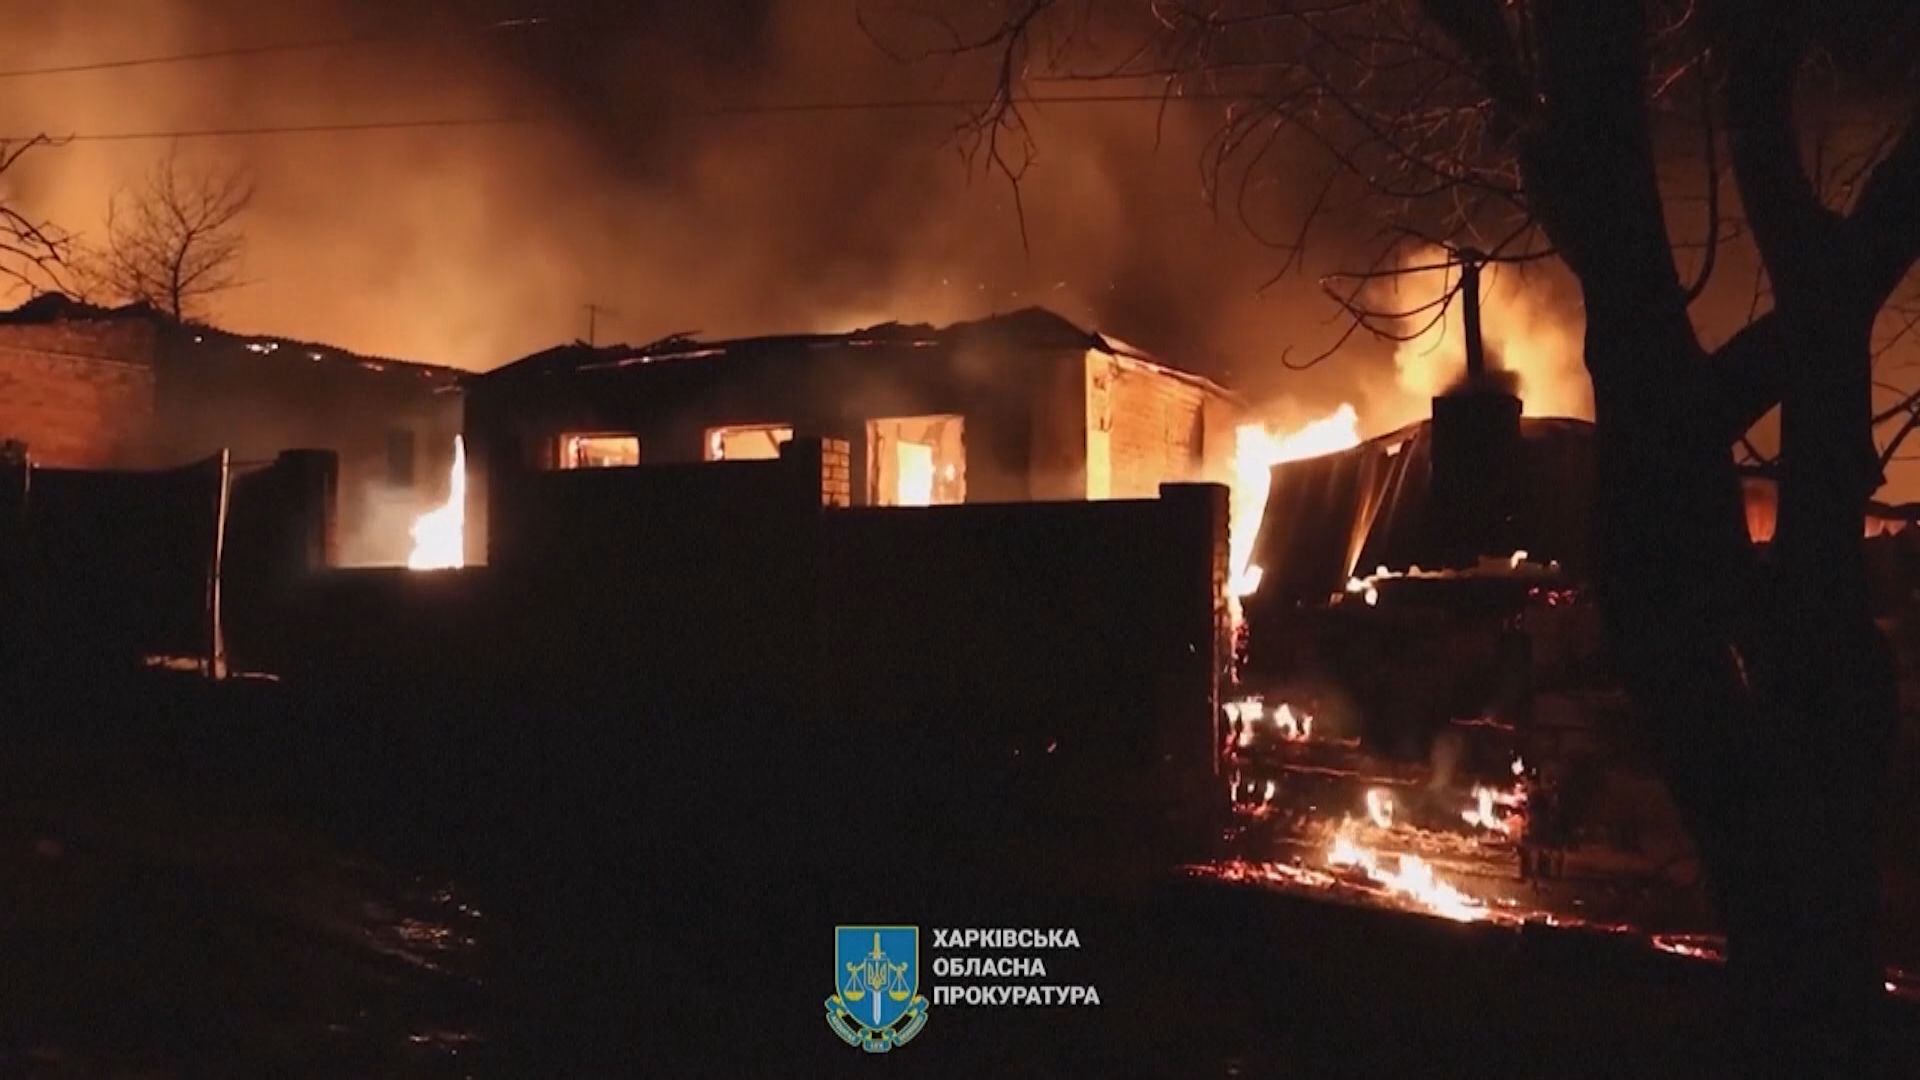 烏克蘭哈爾科夫及敖德薩遭無人機襲擊 至少7死7傷